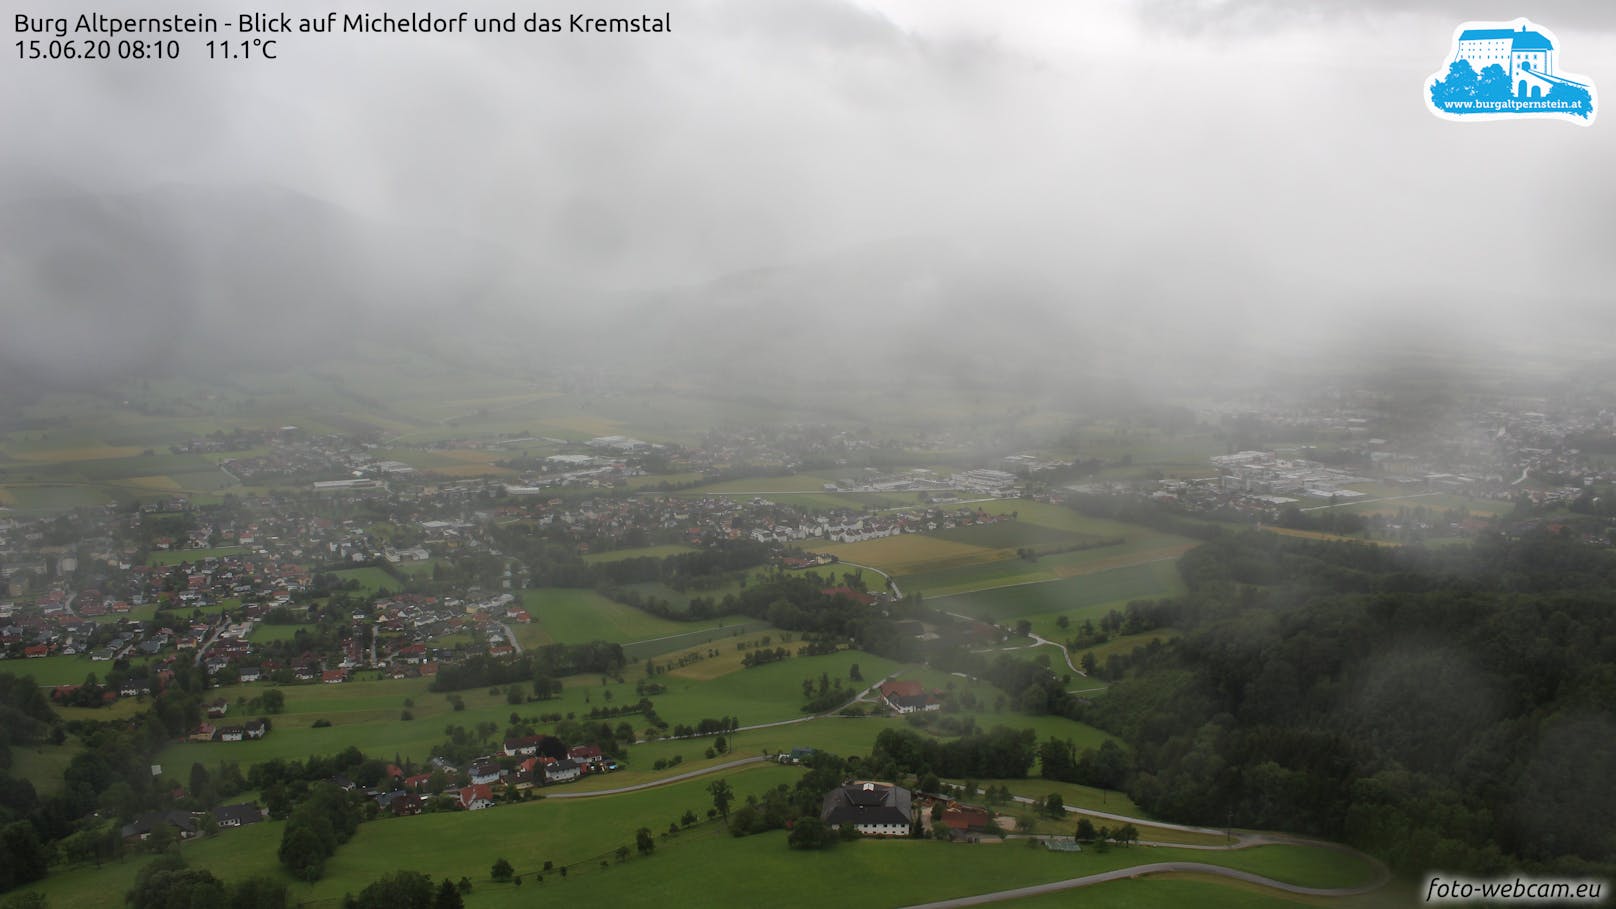 Regenwetter im Kremstal: Blick von der Burg Altpernstein